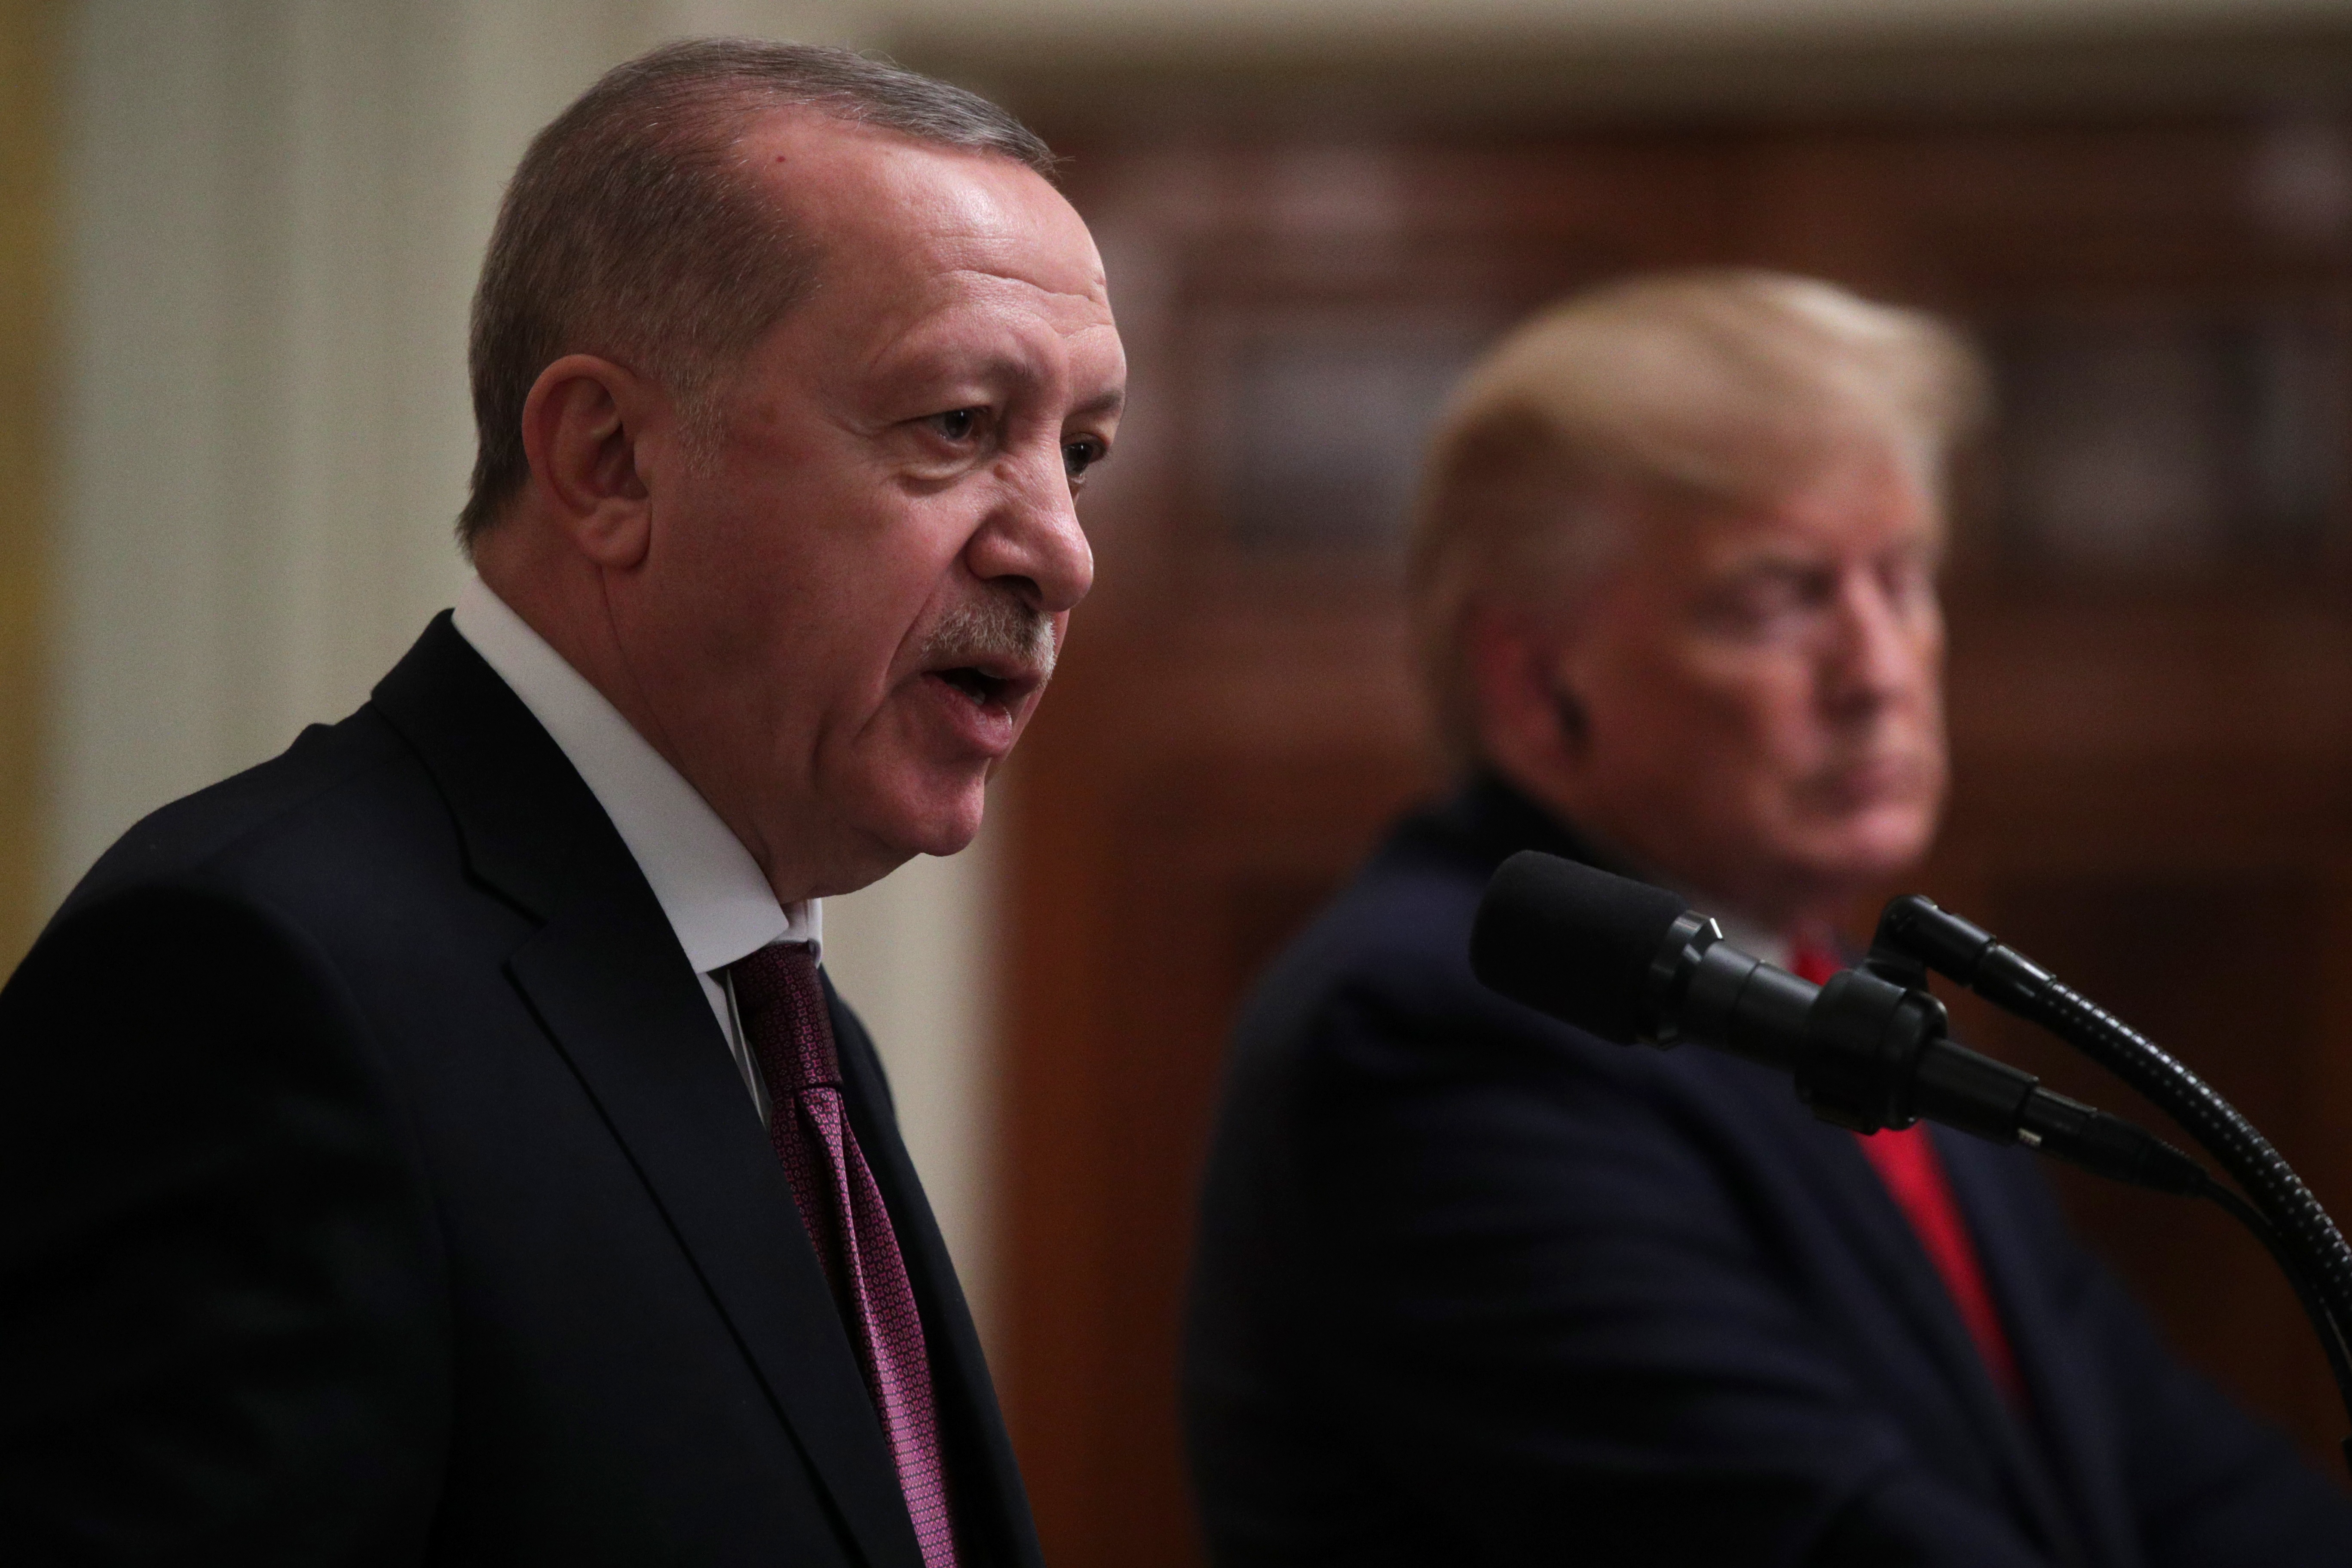 Live: Trump-Erdogan meeting and press conference - CNNPolitics